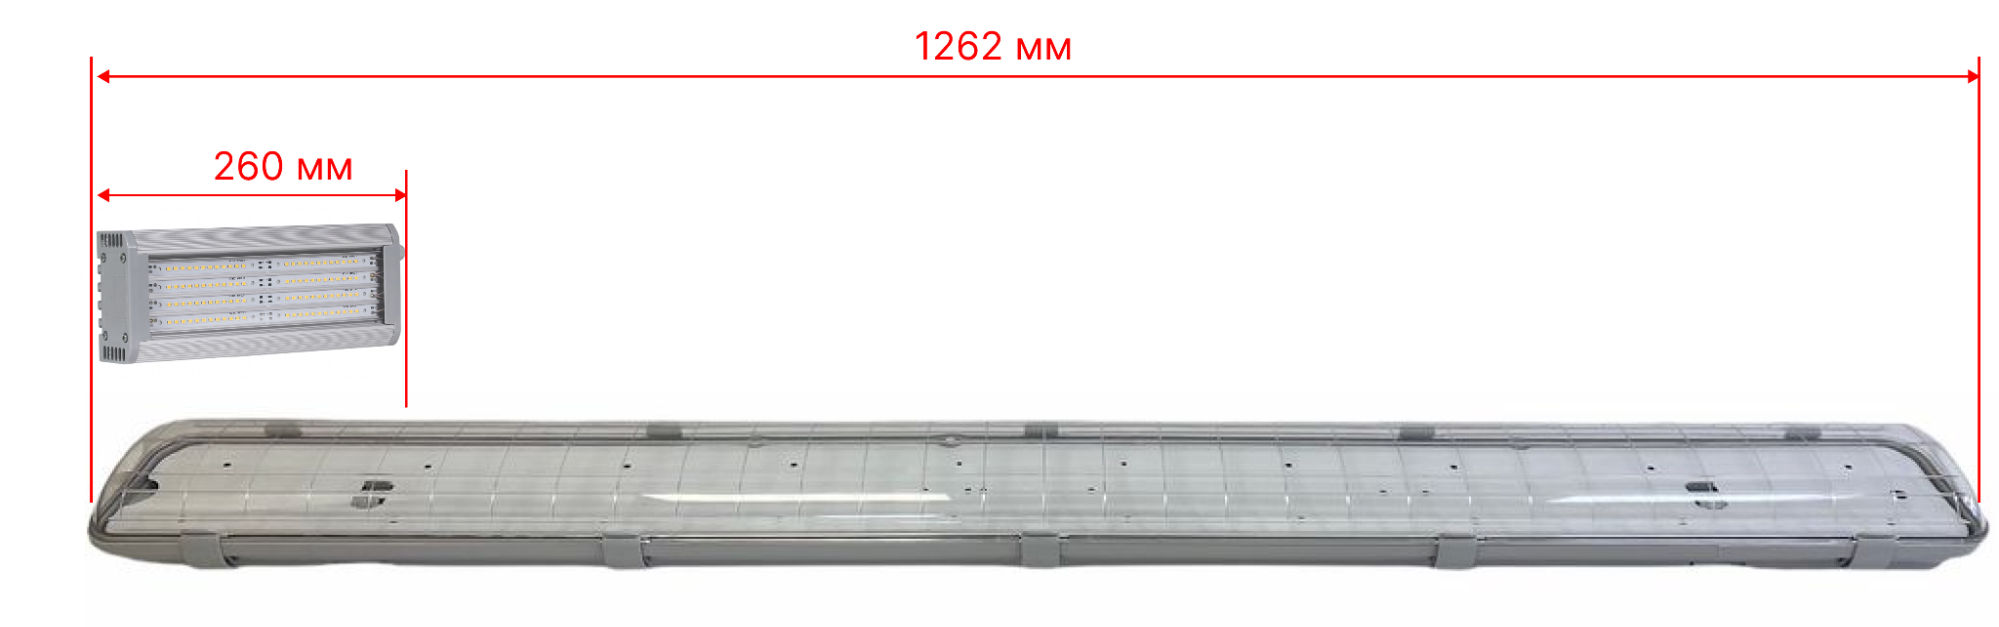 Сравнение габаритных размеров светильников FS2-MAN-KVAR и ECO FS-MAN-PL